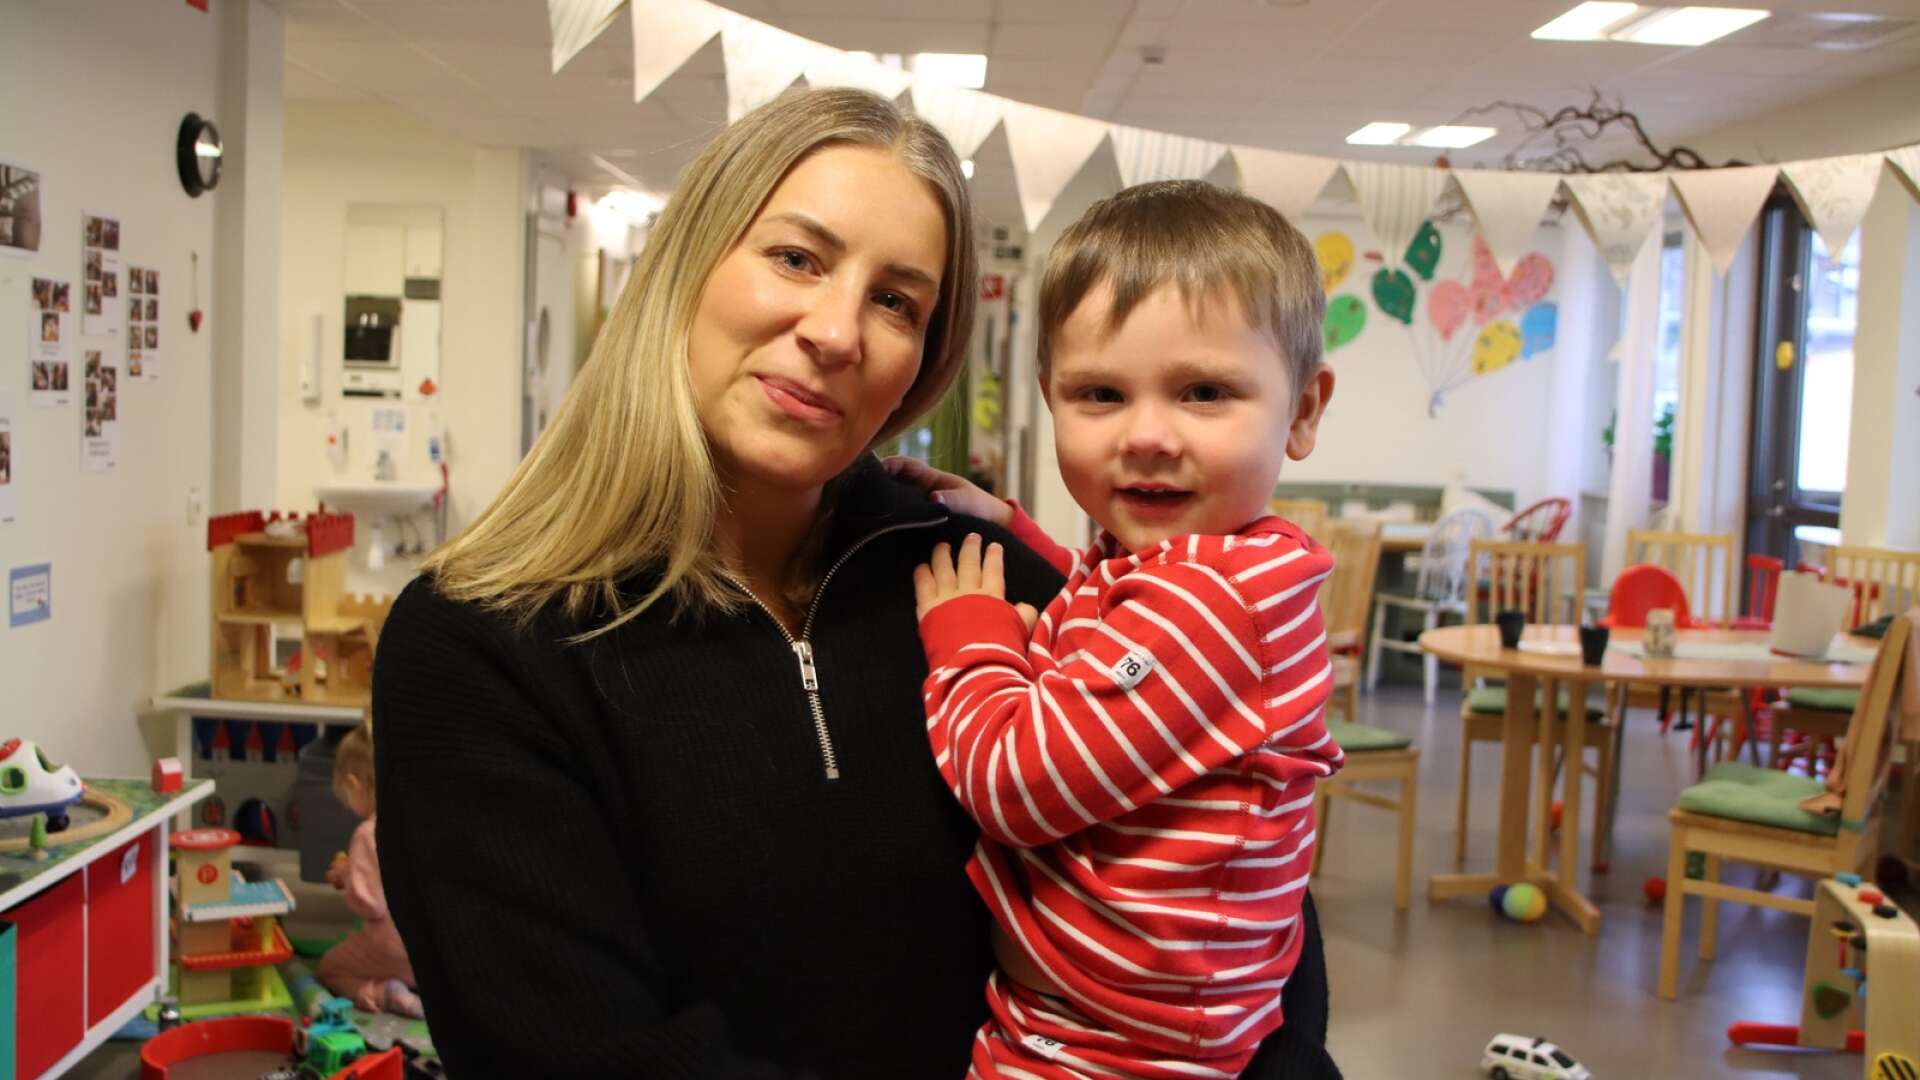 Ulrika Kjellemar arbetar som förskolepedagog och tycker skärmar kan vara ett bra komplement i barns lärande. Här ses hon med sonen Ture, 3,5 år gammal. 